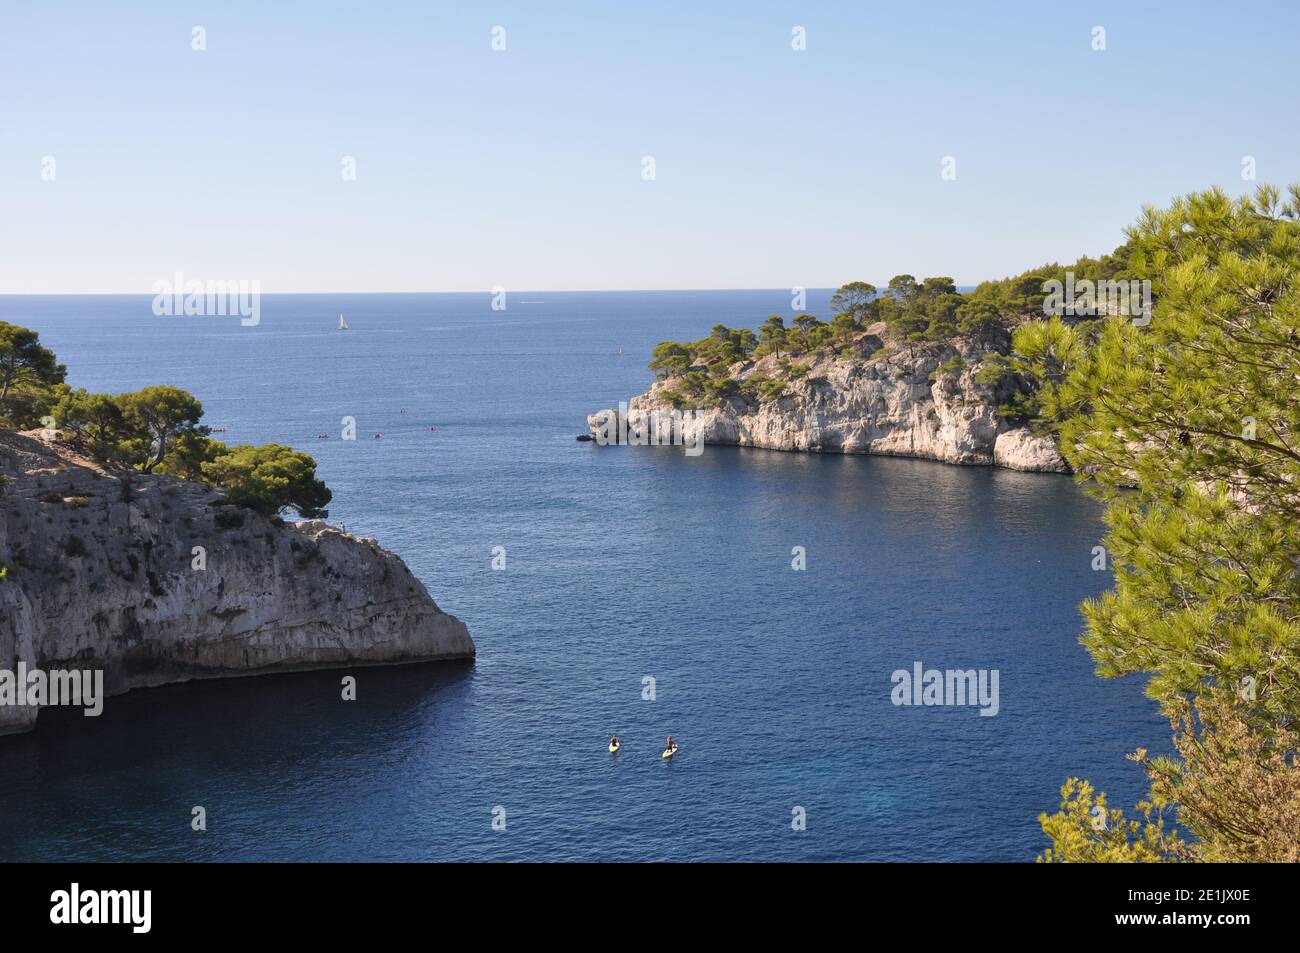 Levez les pagayeurs entre les falaises sur la mer, Calanques, Bouches-du-Rhône, Cassis, Sud de la France Banque D'Images